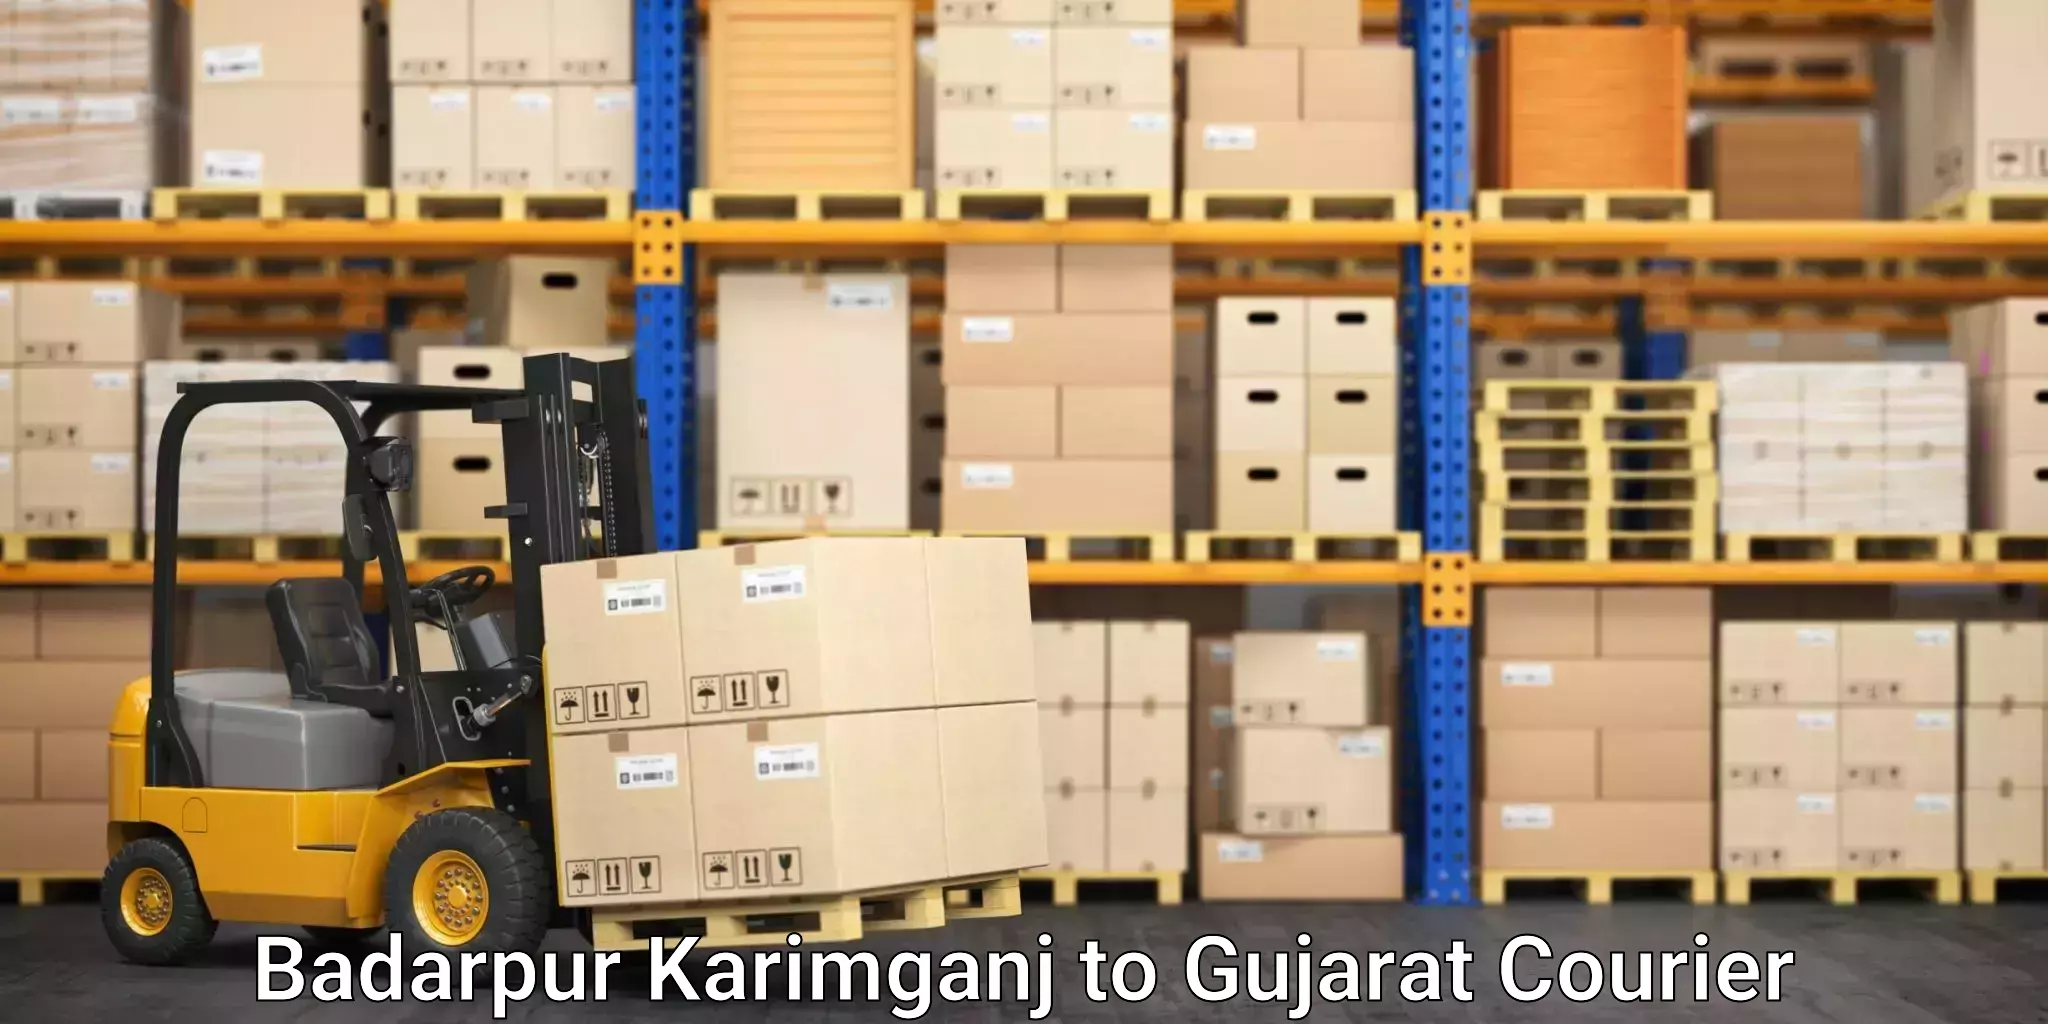 Efficient parcel delivery Badarpur Karimganj to Dhrangadhra